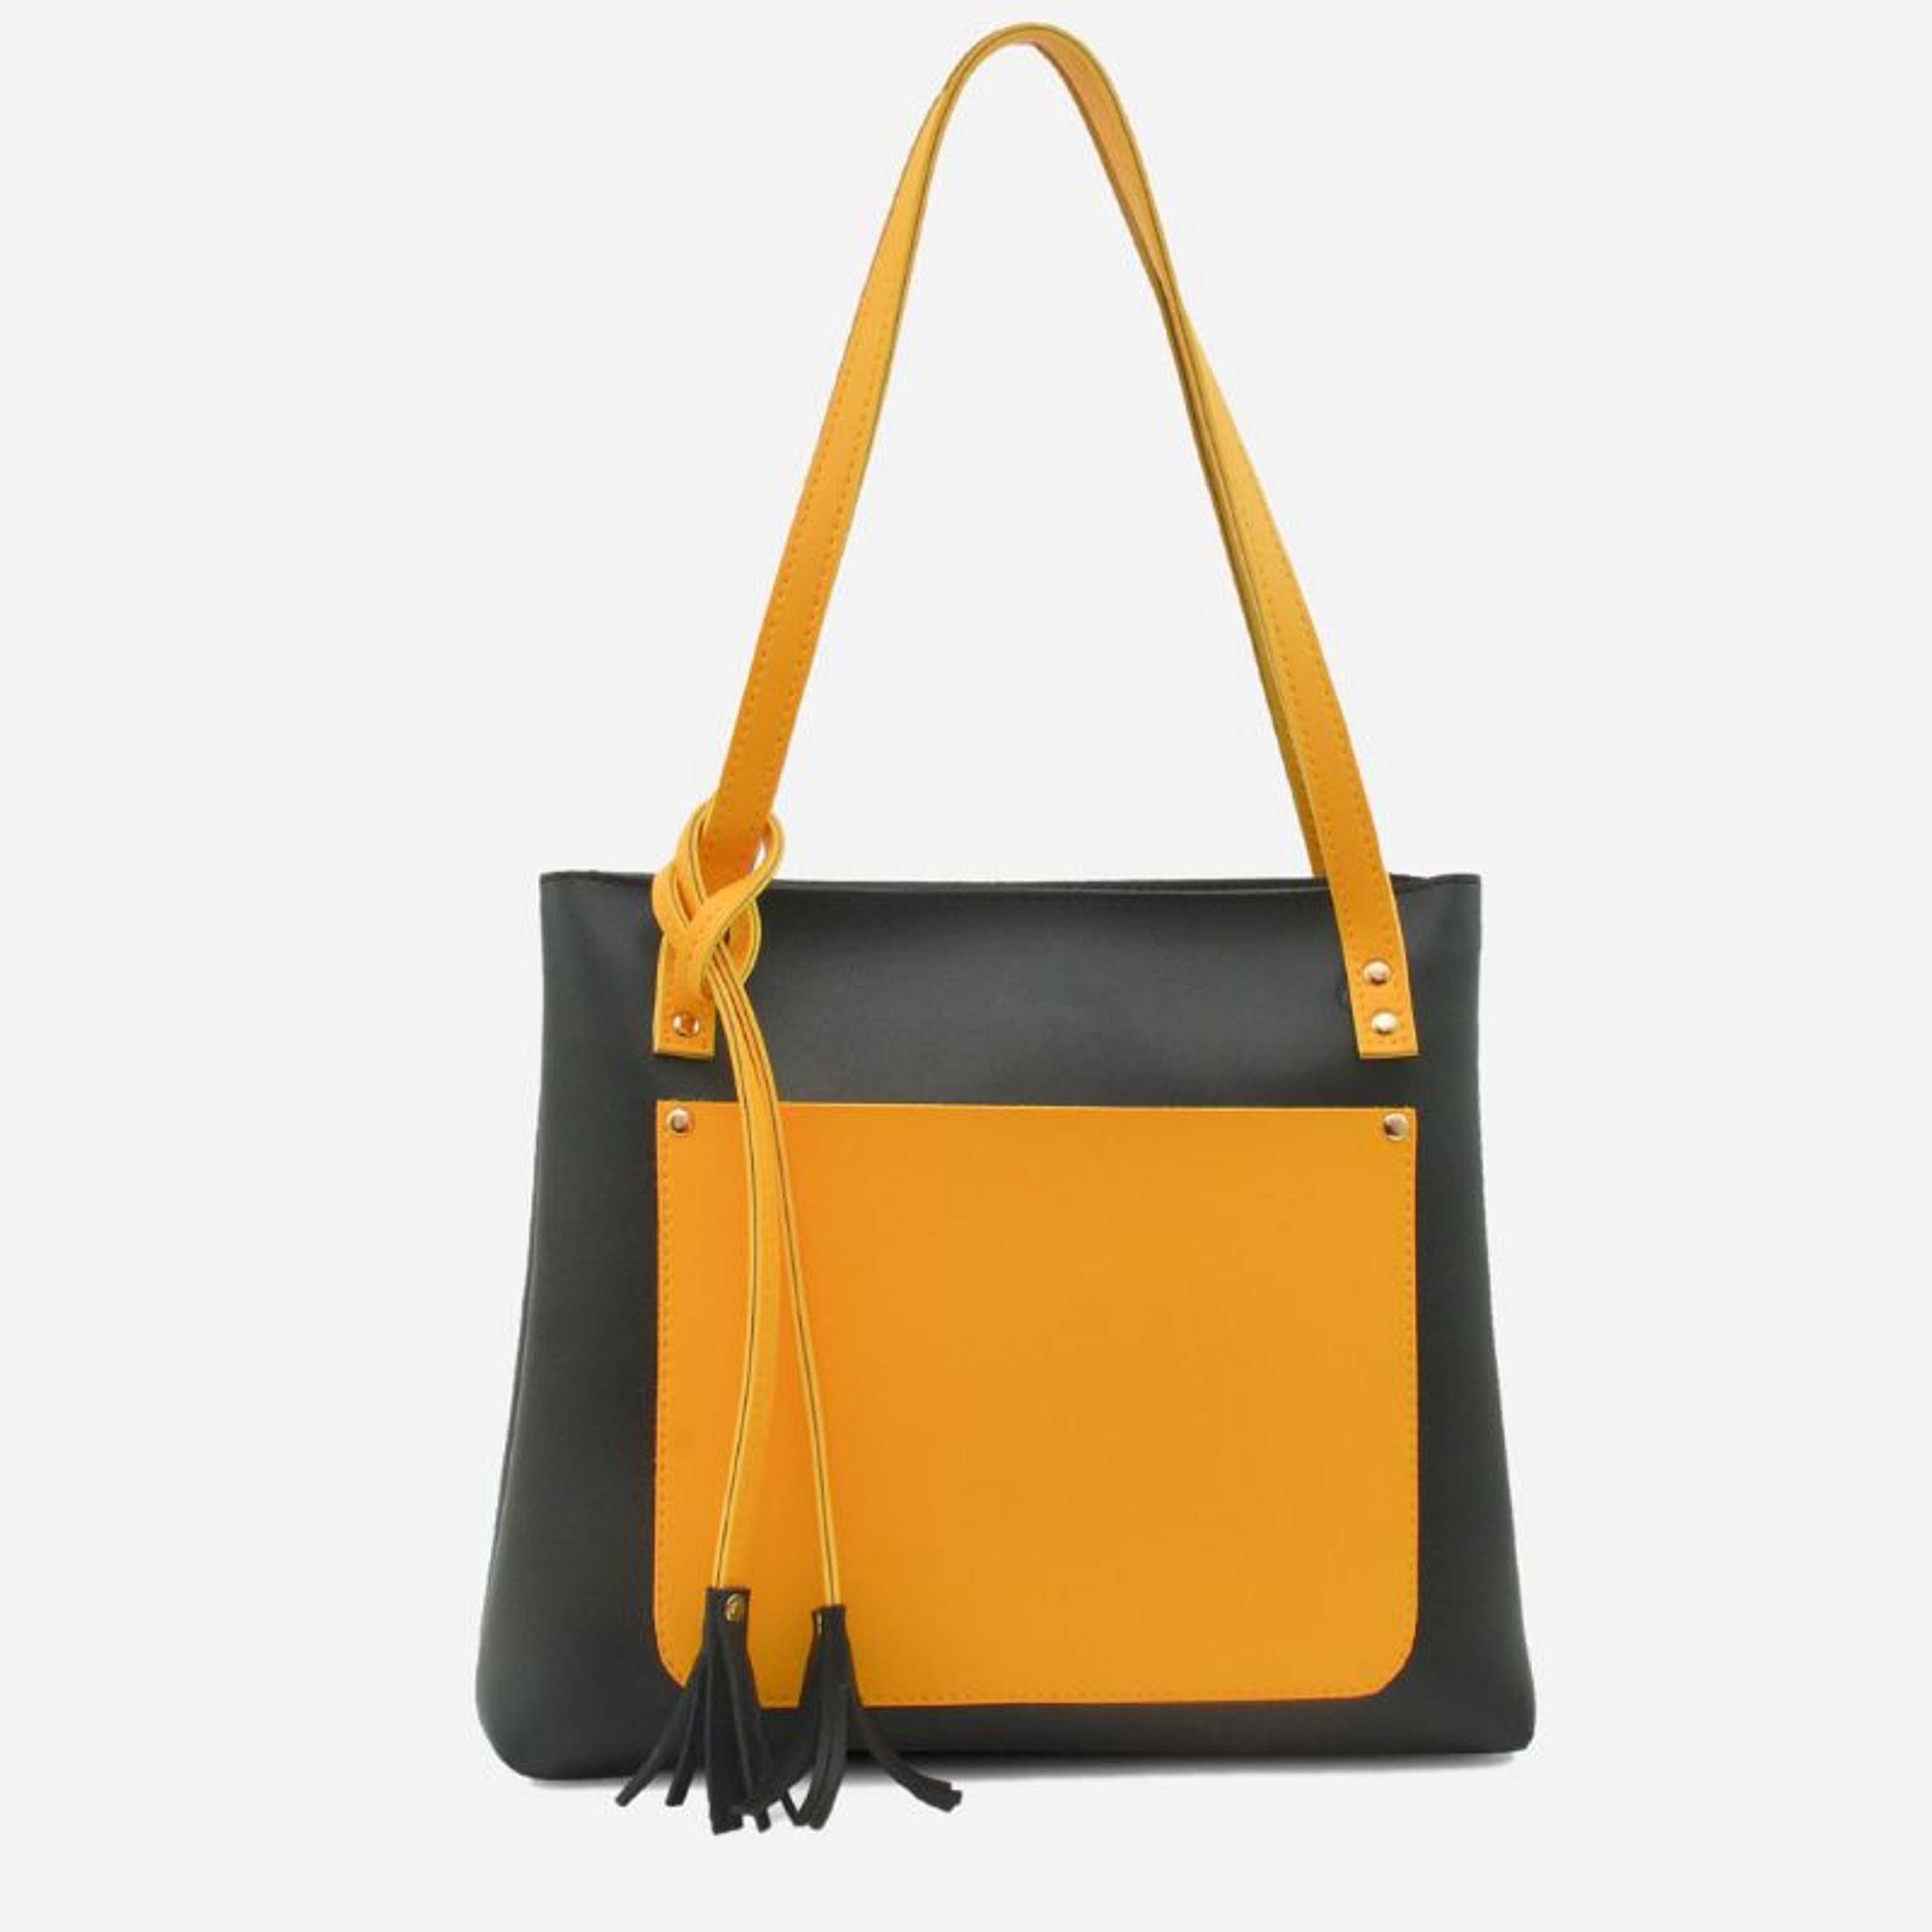 Handbag For Girls - Black Shoulder Bag